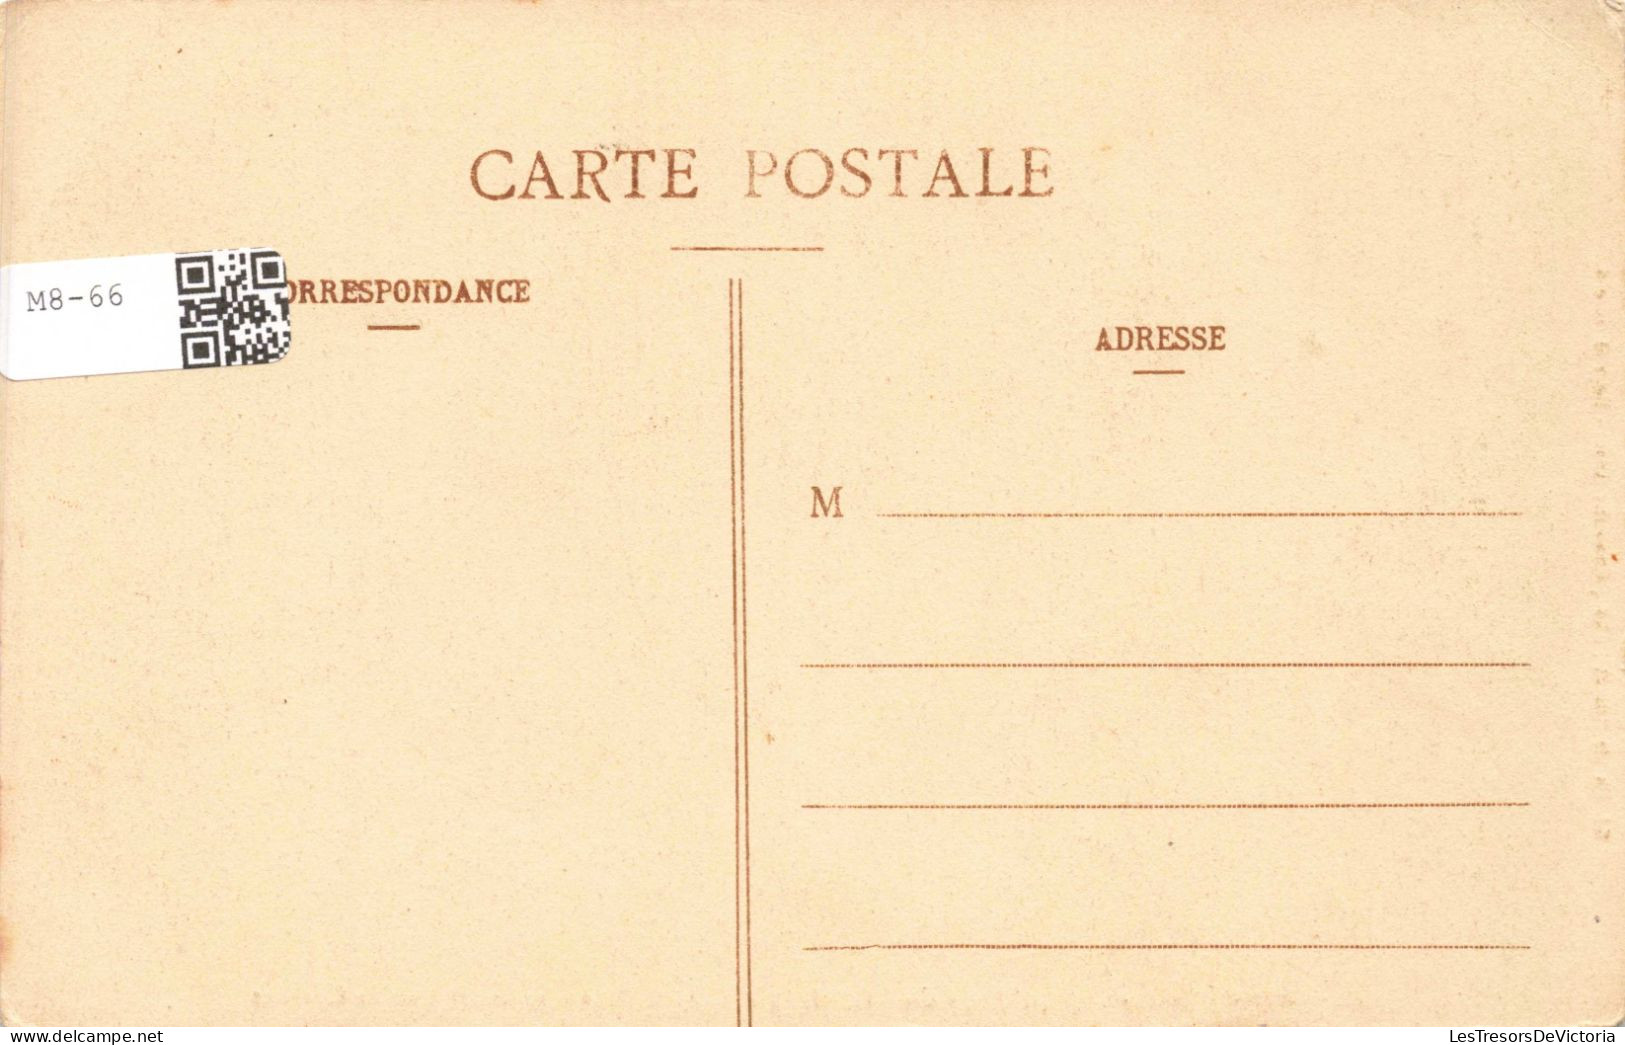 PHOTOGRAPHIE - Chasse à Courre - Equipage De Chantilly à SAR Monseigneur Le Duc De Chartres - Carte Postale Ancienne - Fotografie